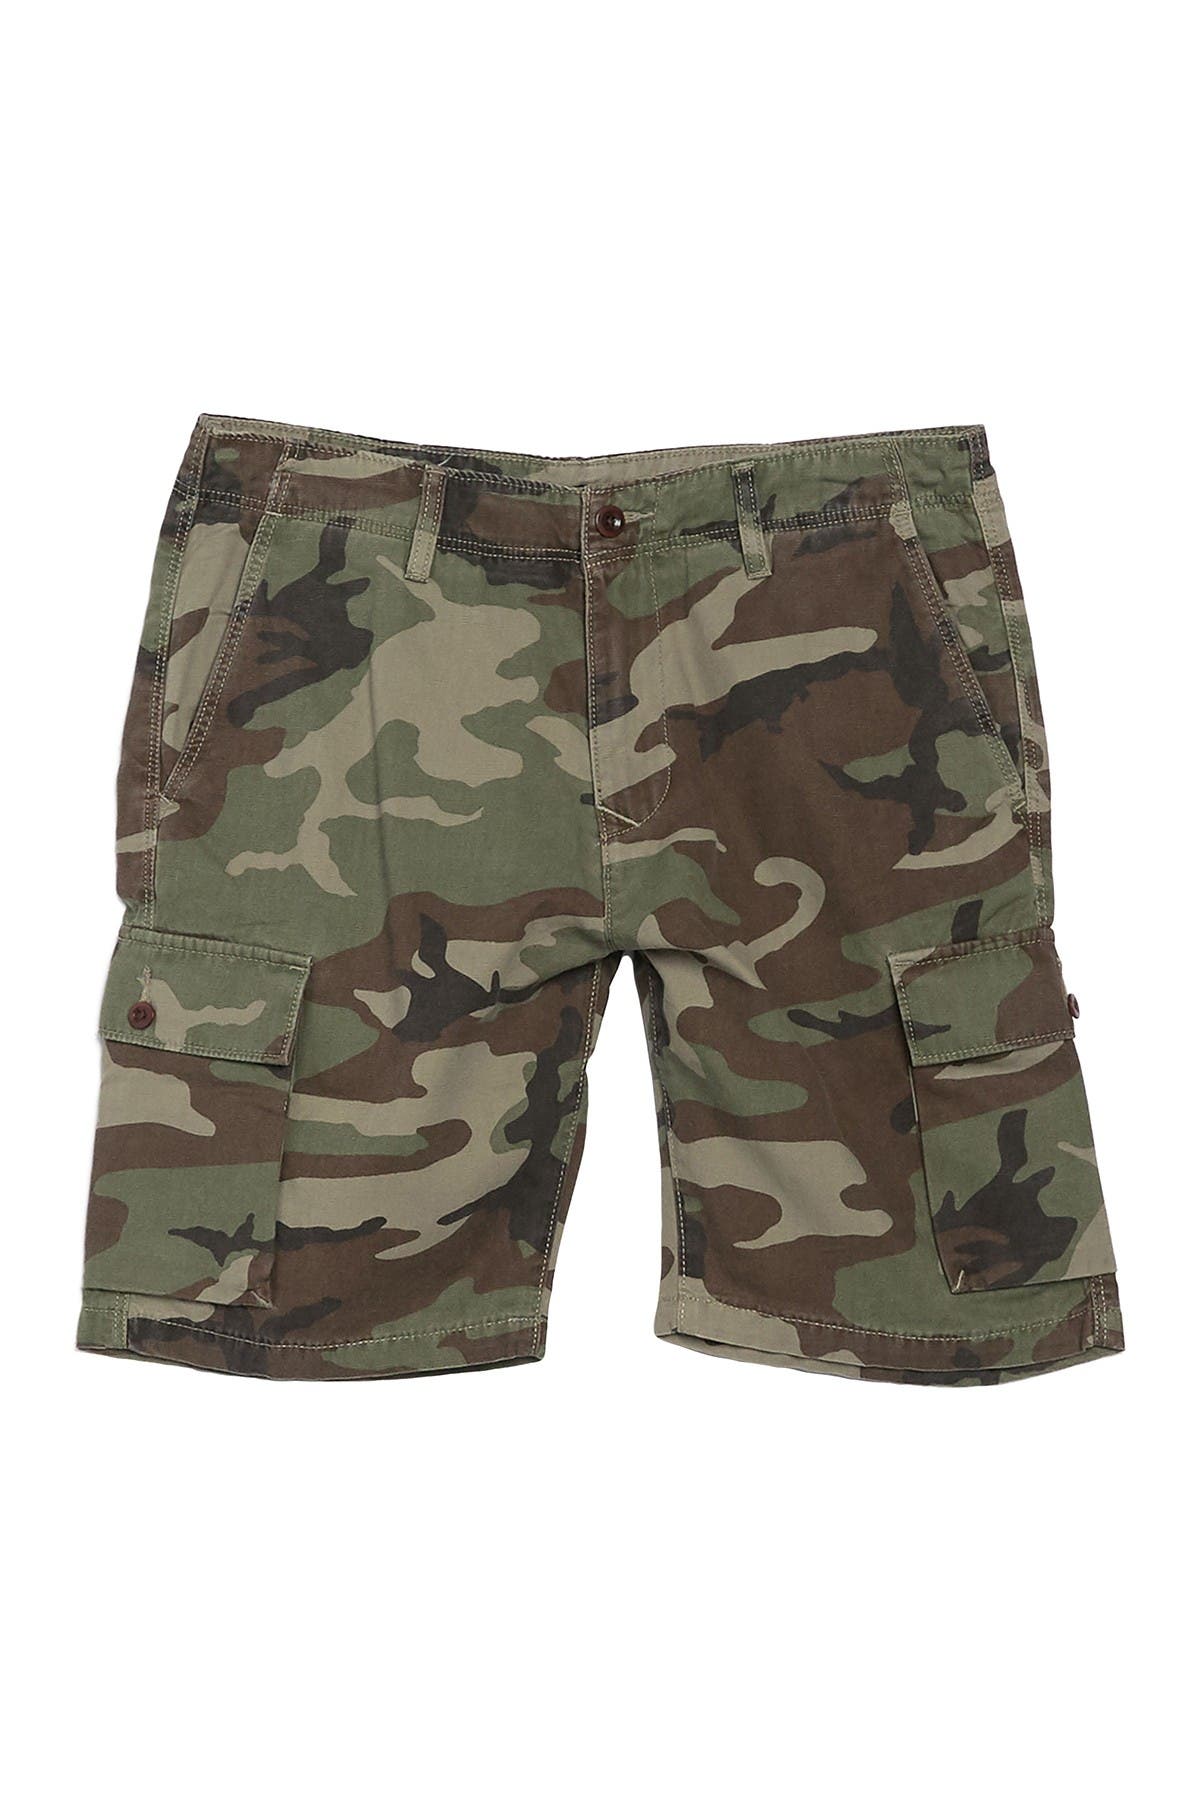 lucky brand cargo shorts